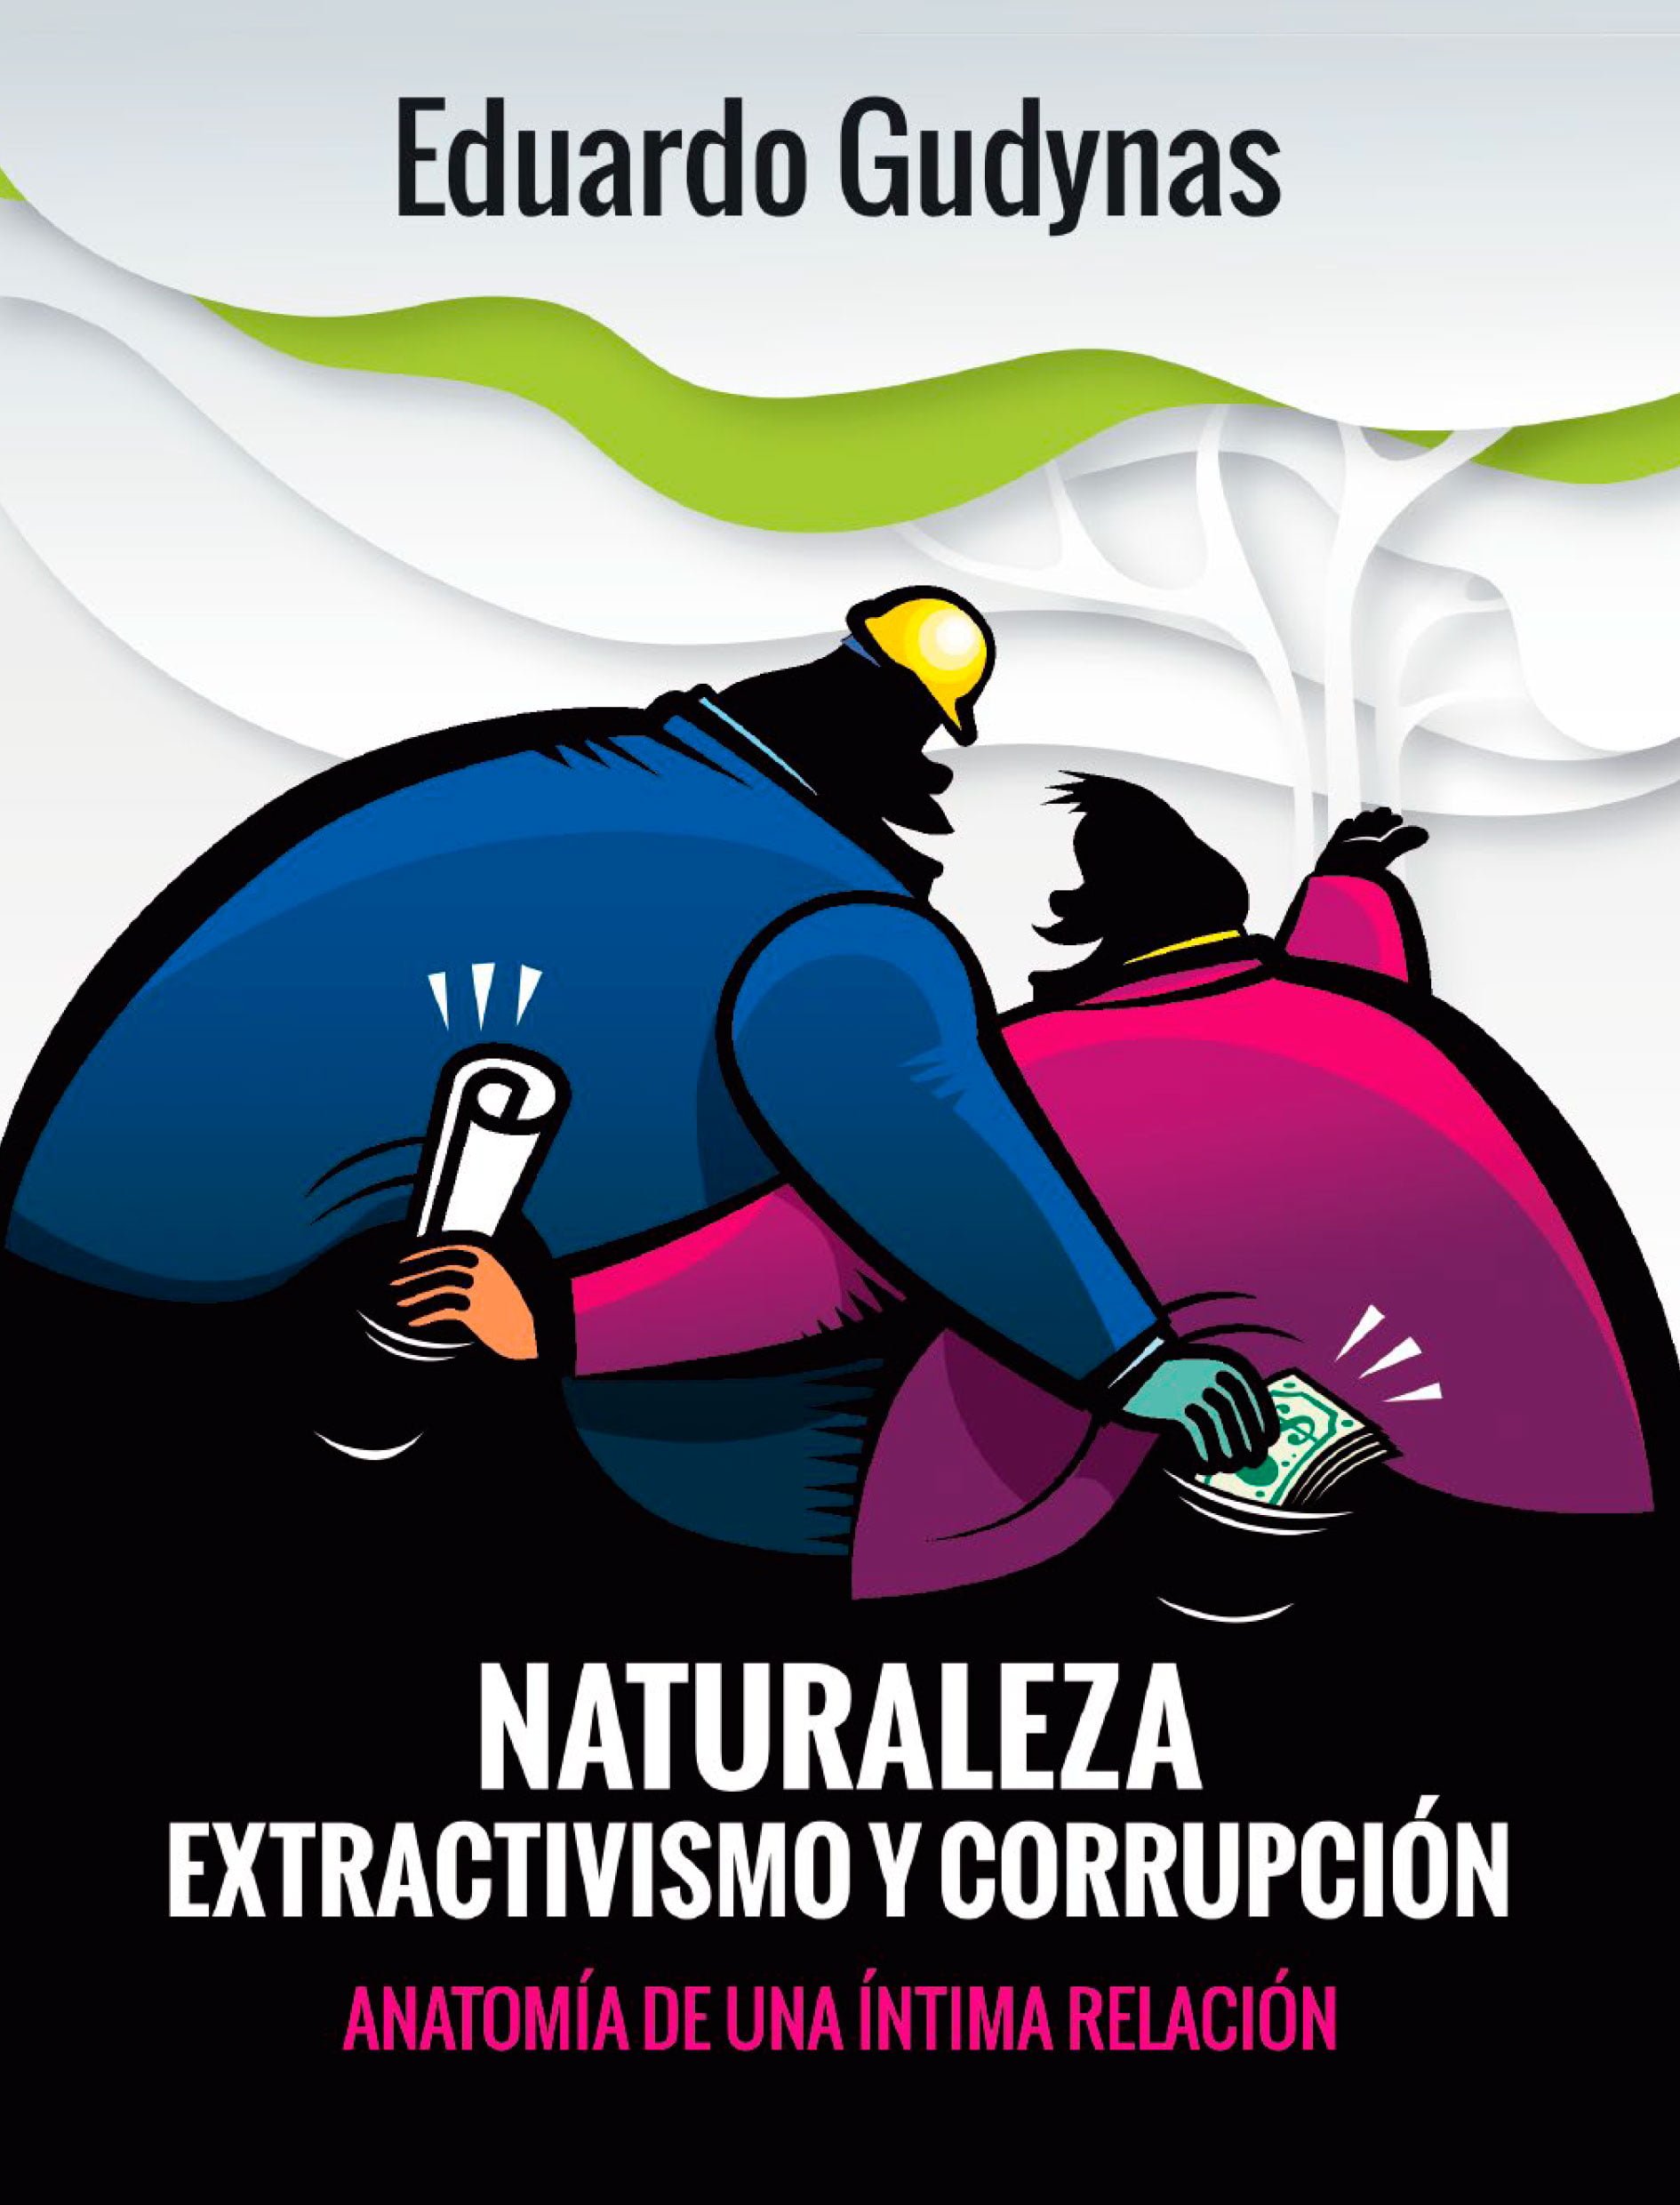 Presentación del libro “Naturaleza, extractivismos y corrupción” de Gudynas